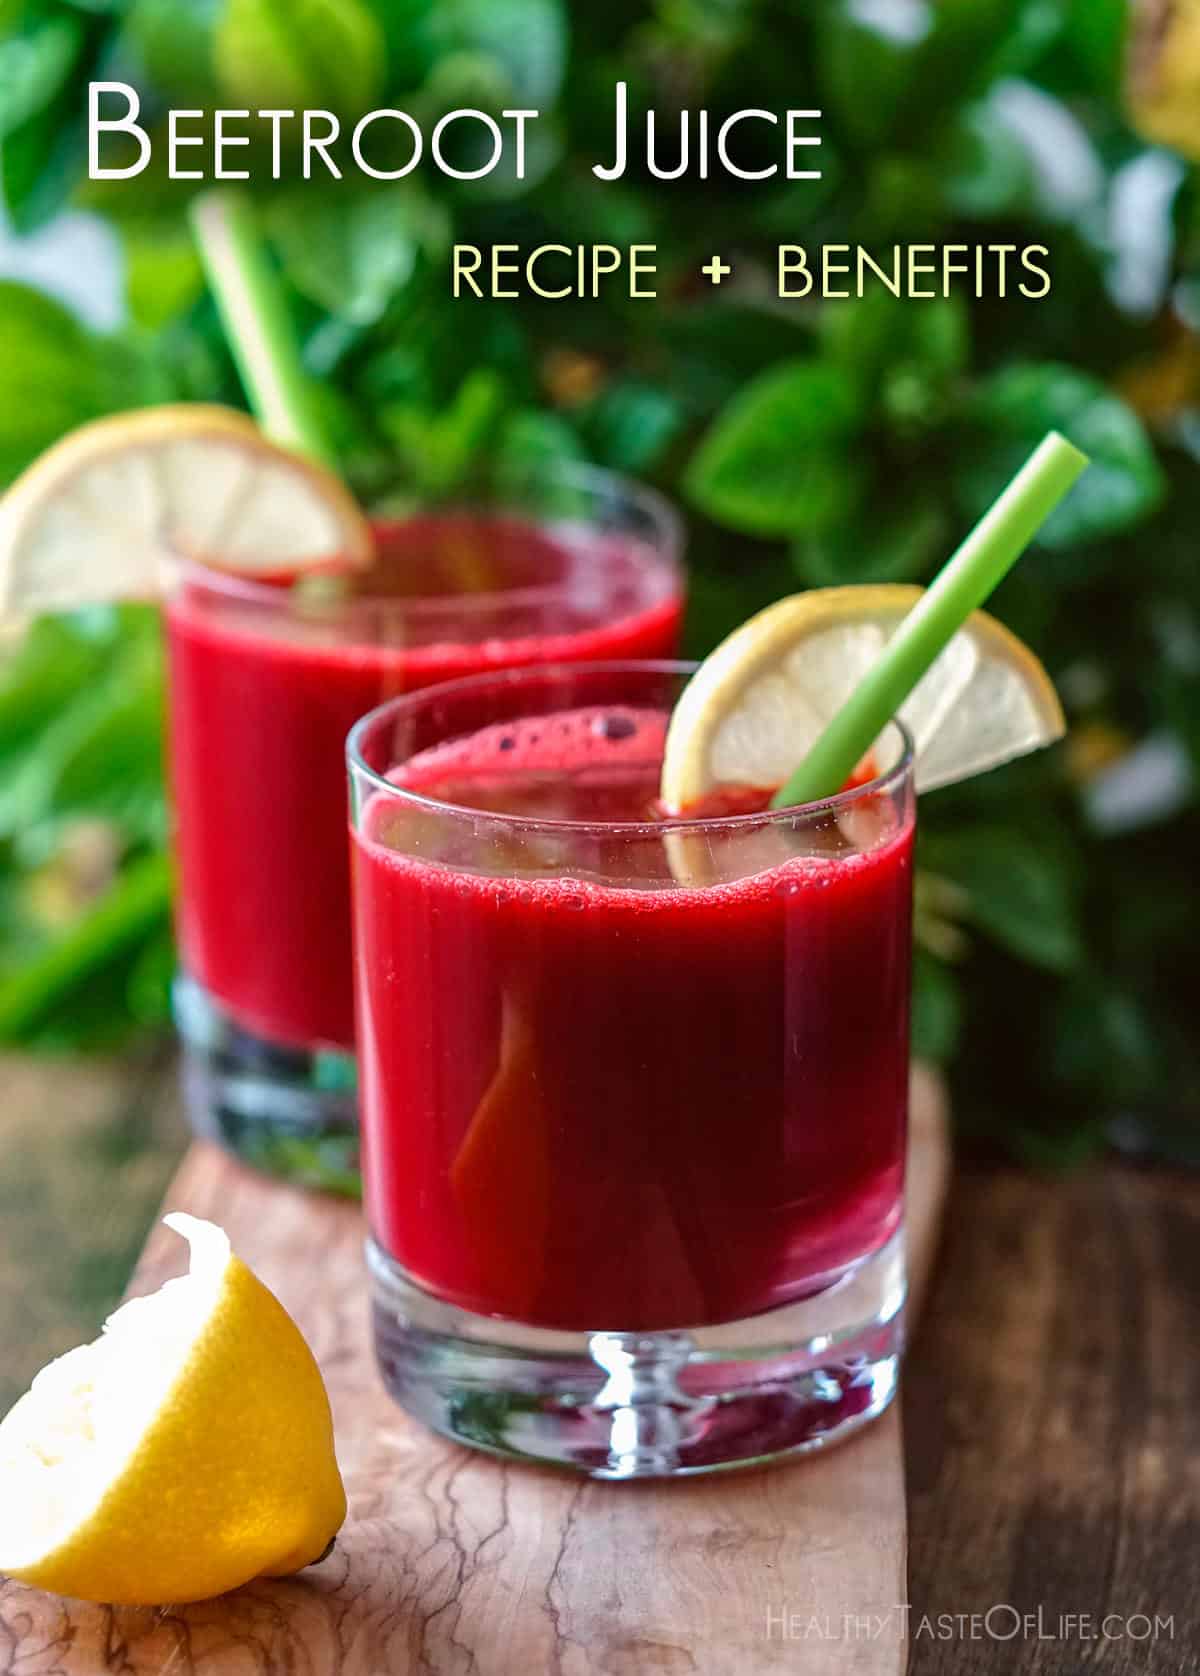 Best Beet Juice Recipe For Most Benefits (Blender or Juicer);